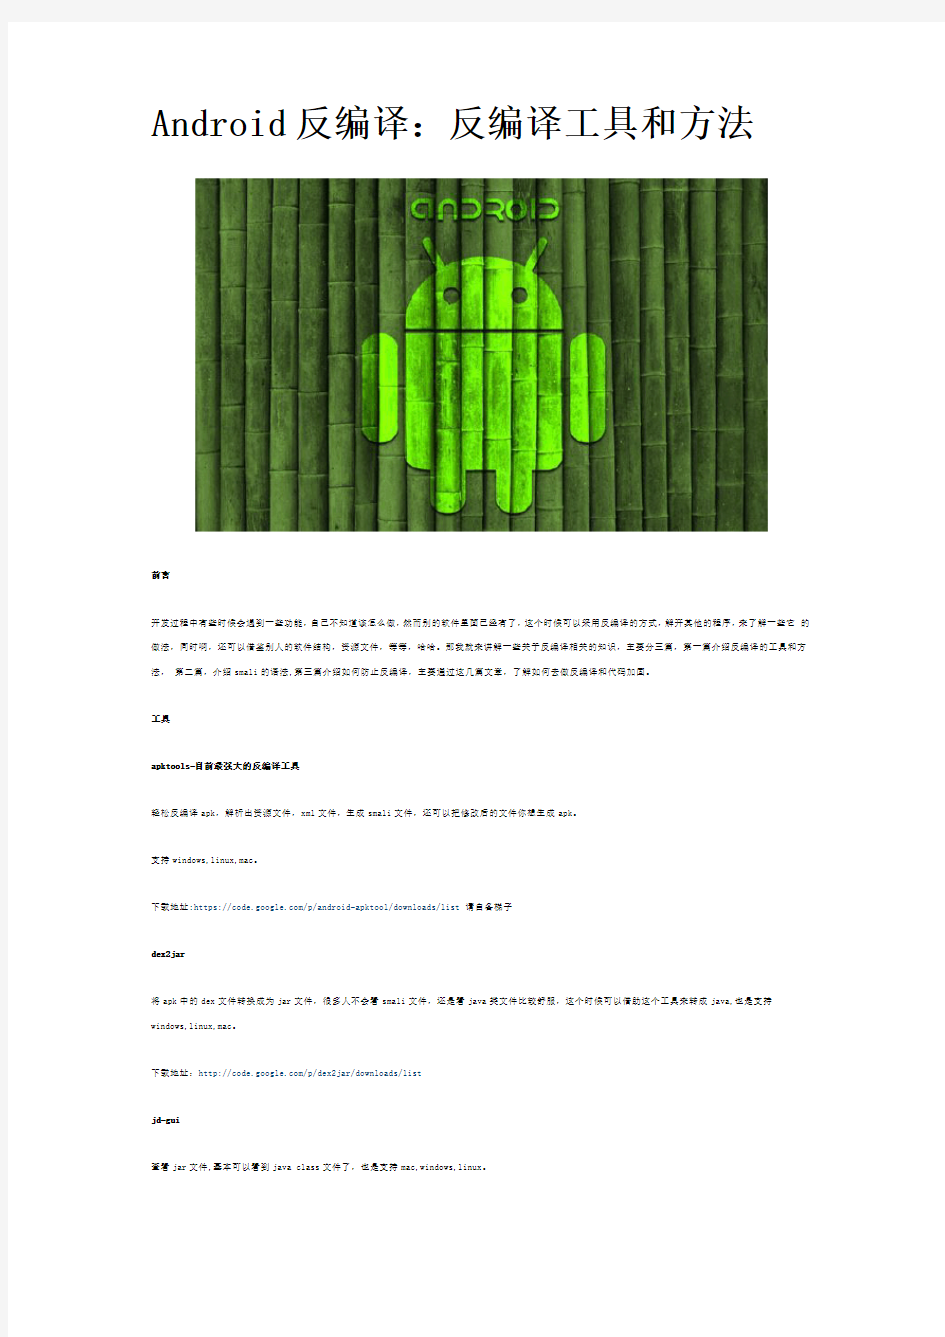 Android反编译工具和方法